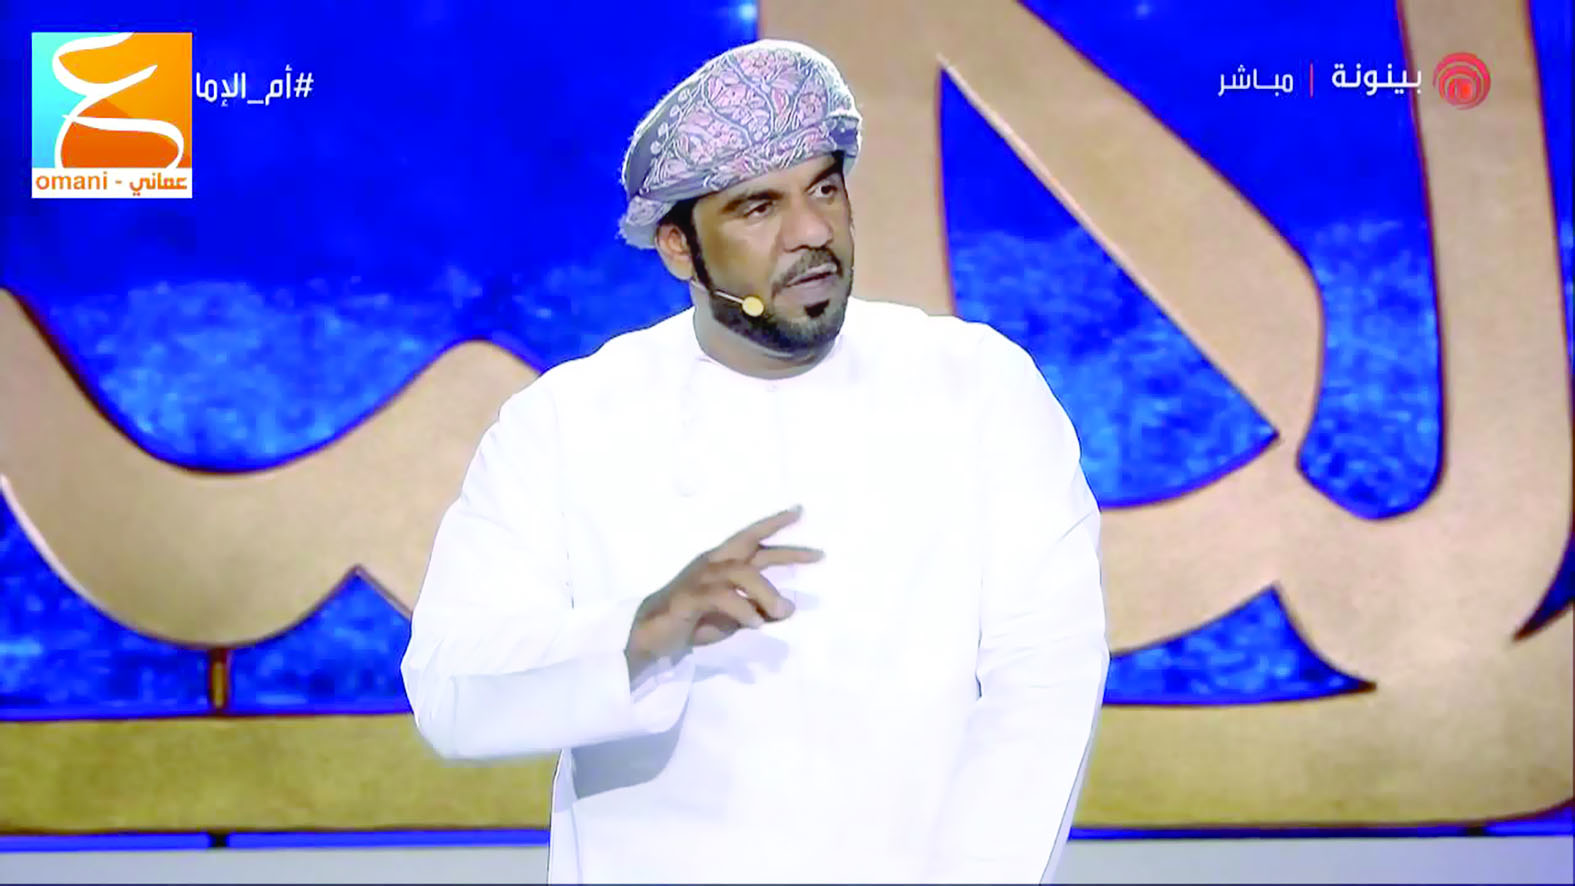 الشاعر طلال الشامسي: أتمنى أن اقدم ما يرفع اسم عمان عاليا